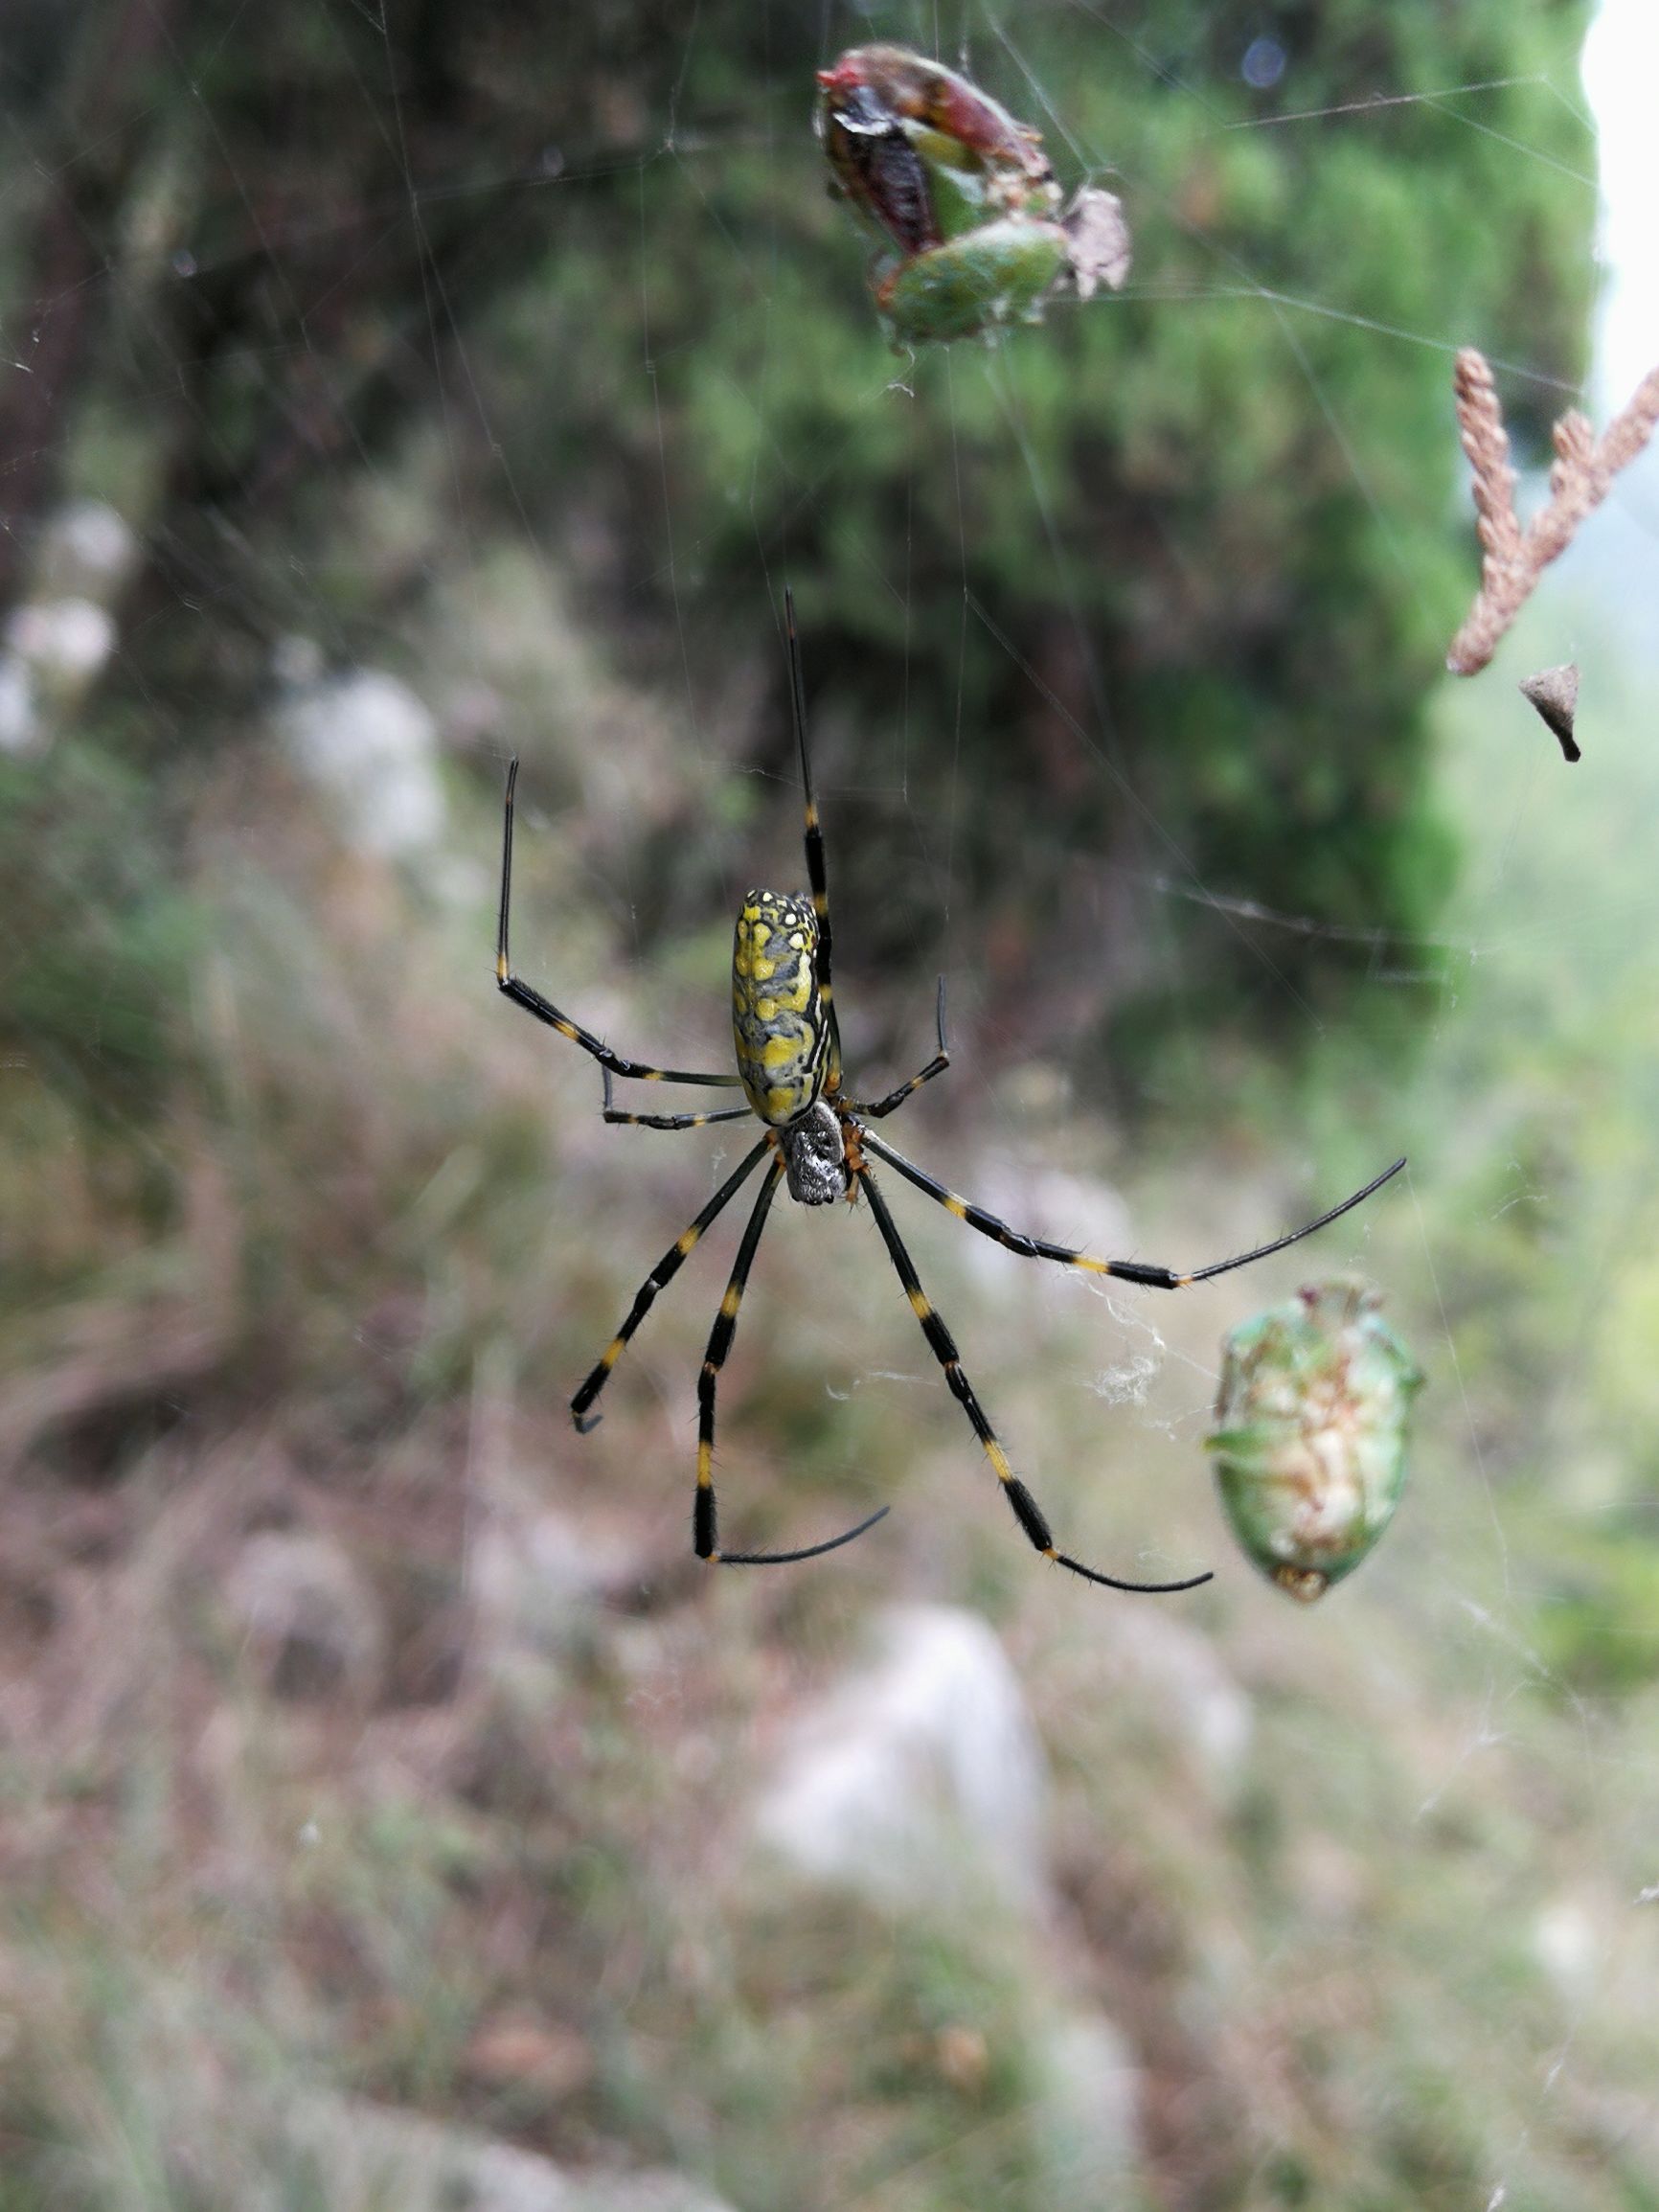 山间遇到彩色大蜘蛛,名字有意思,毒性很小,几百只才有1克毒!